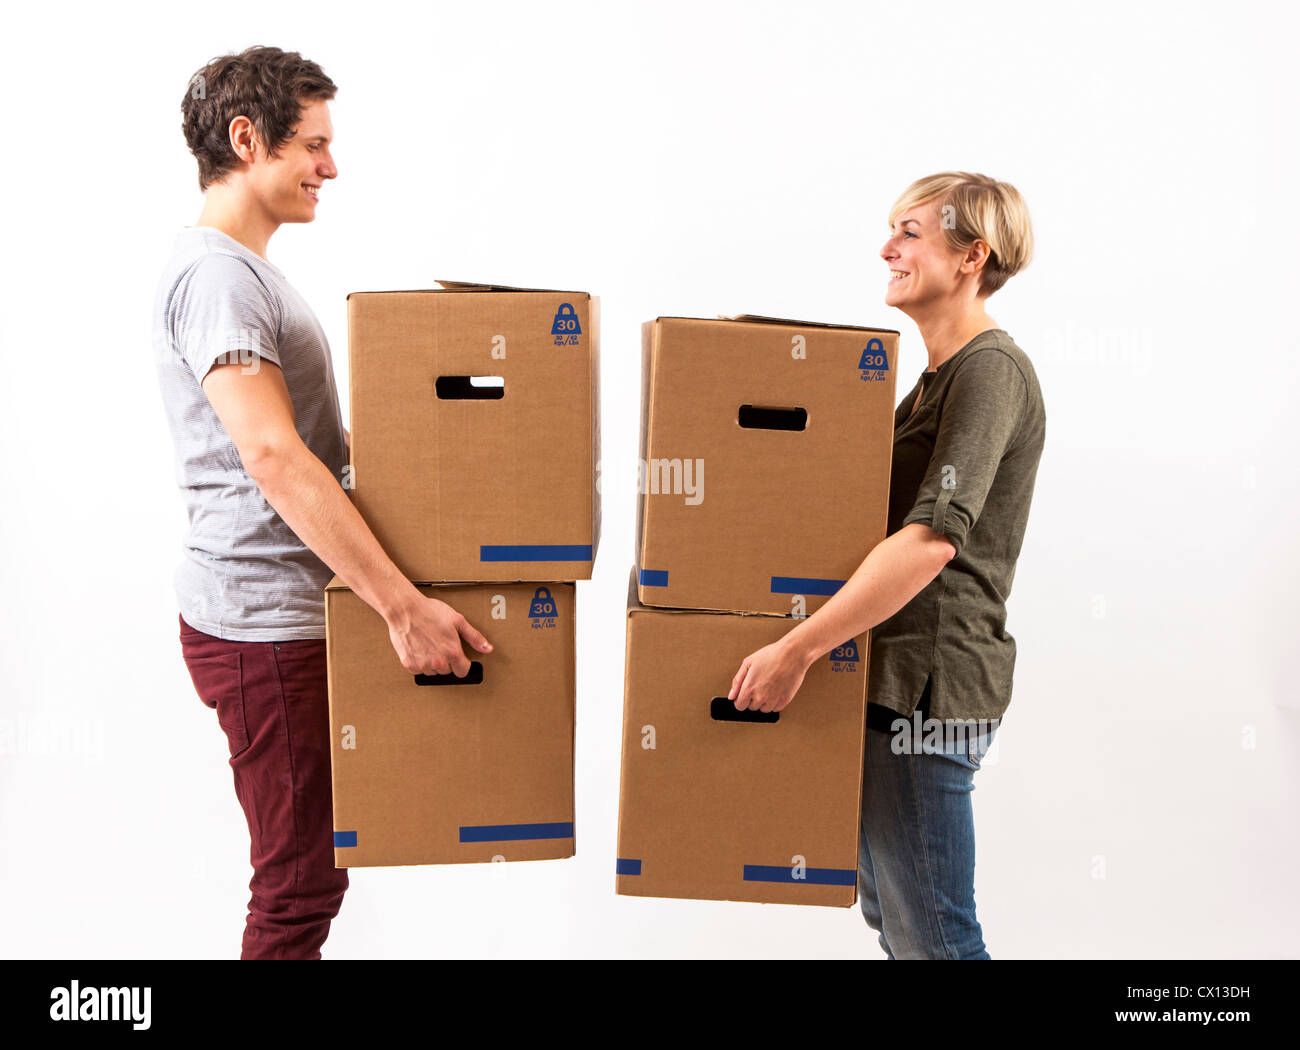 Symbolfoto Umzug, Auszug, umziehen. Junges Paar trägt Umzugskartons. Umzugskisten aus Pappkarton. Stock Photo